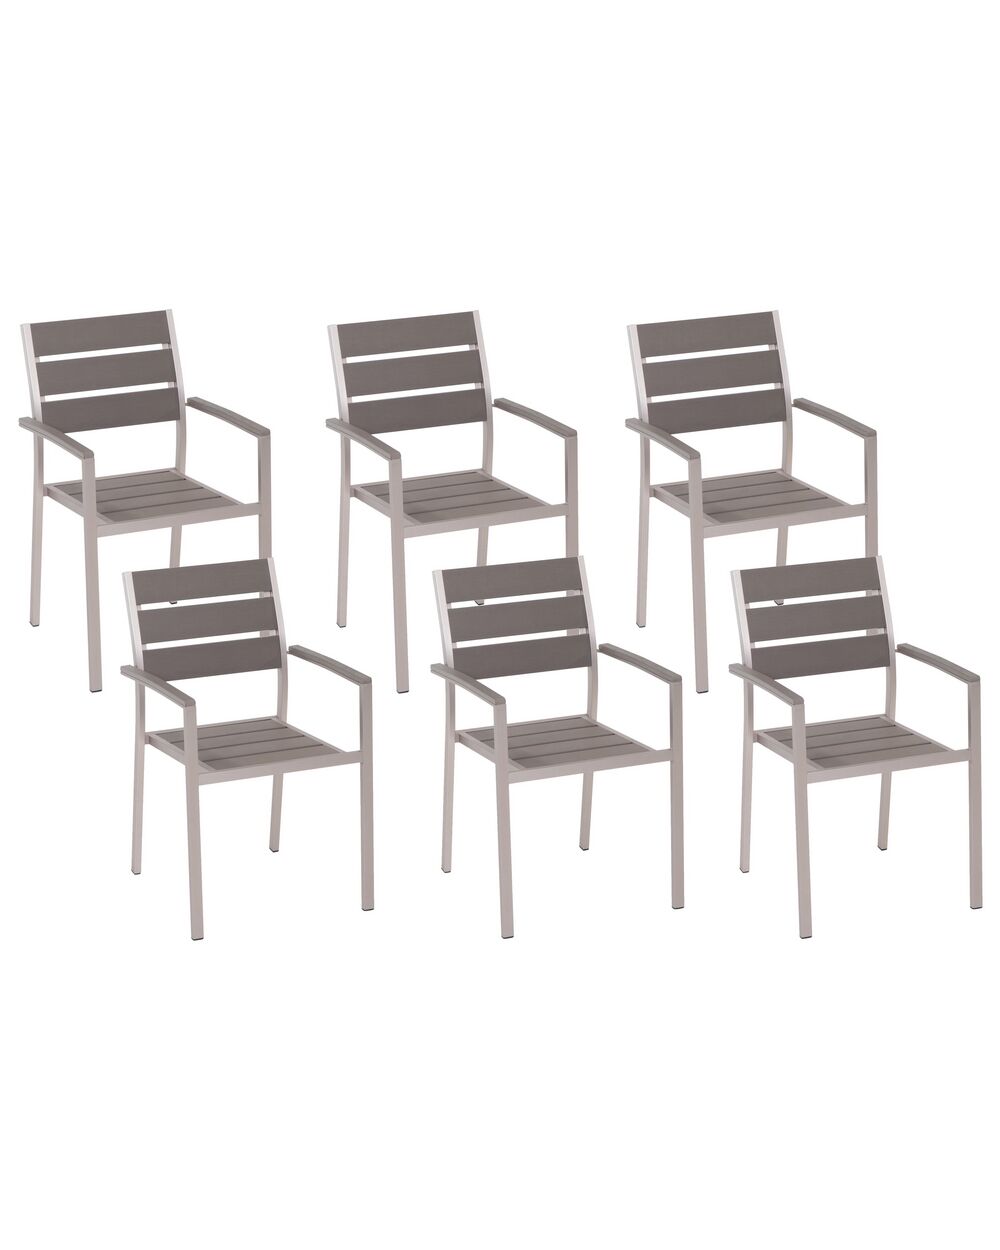 CLASSIC ACCESSORIES Housse de protection pour chaise extérieure, taille  unique, gris